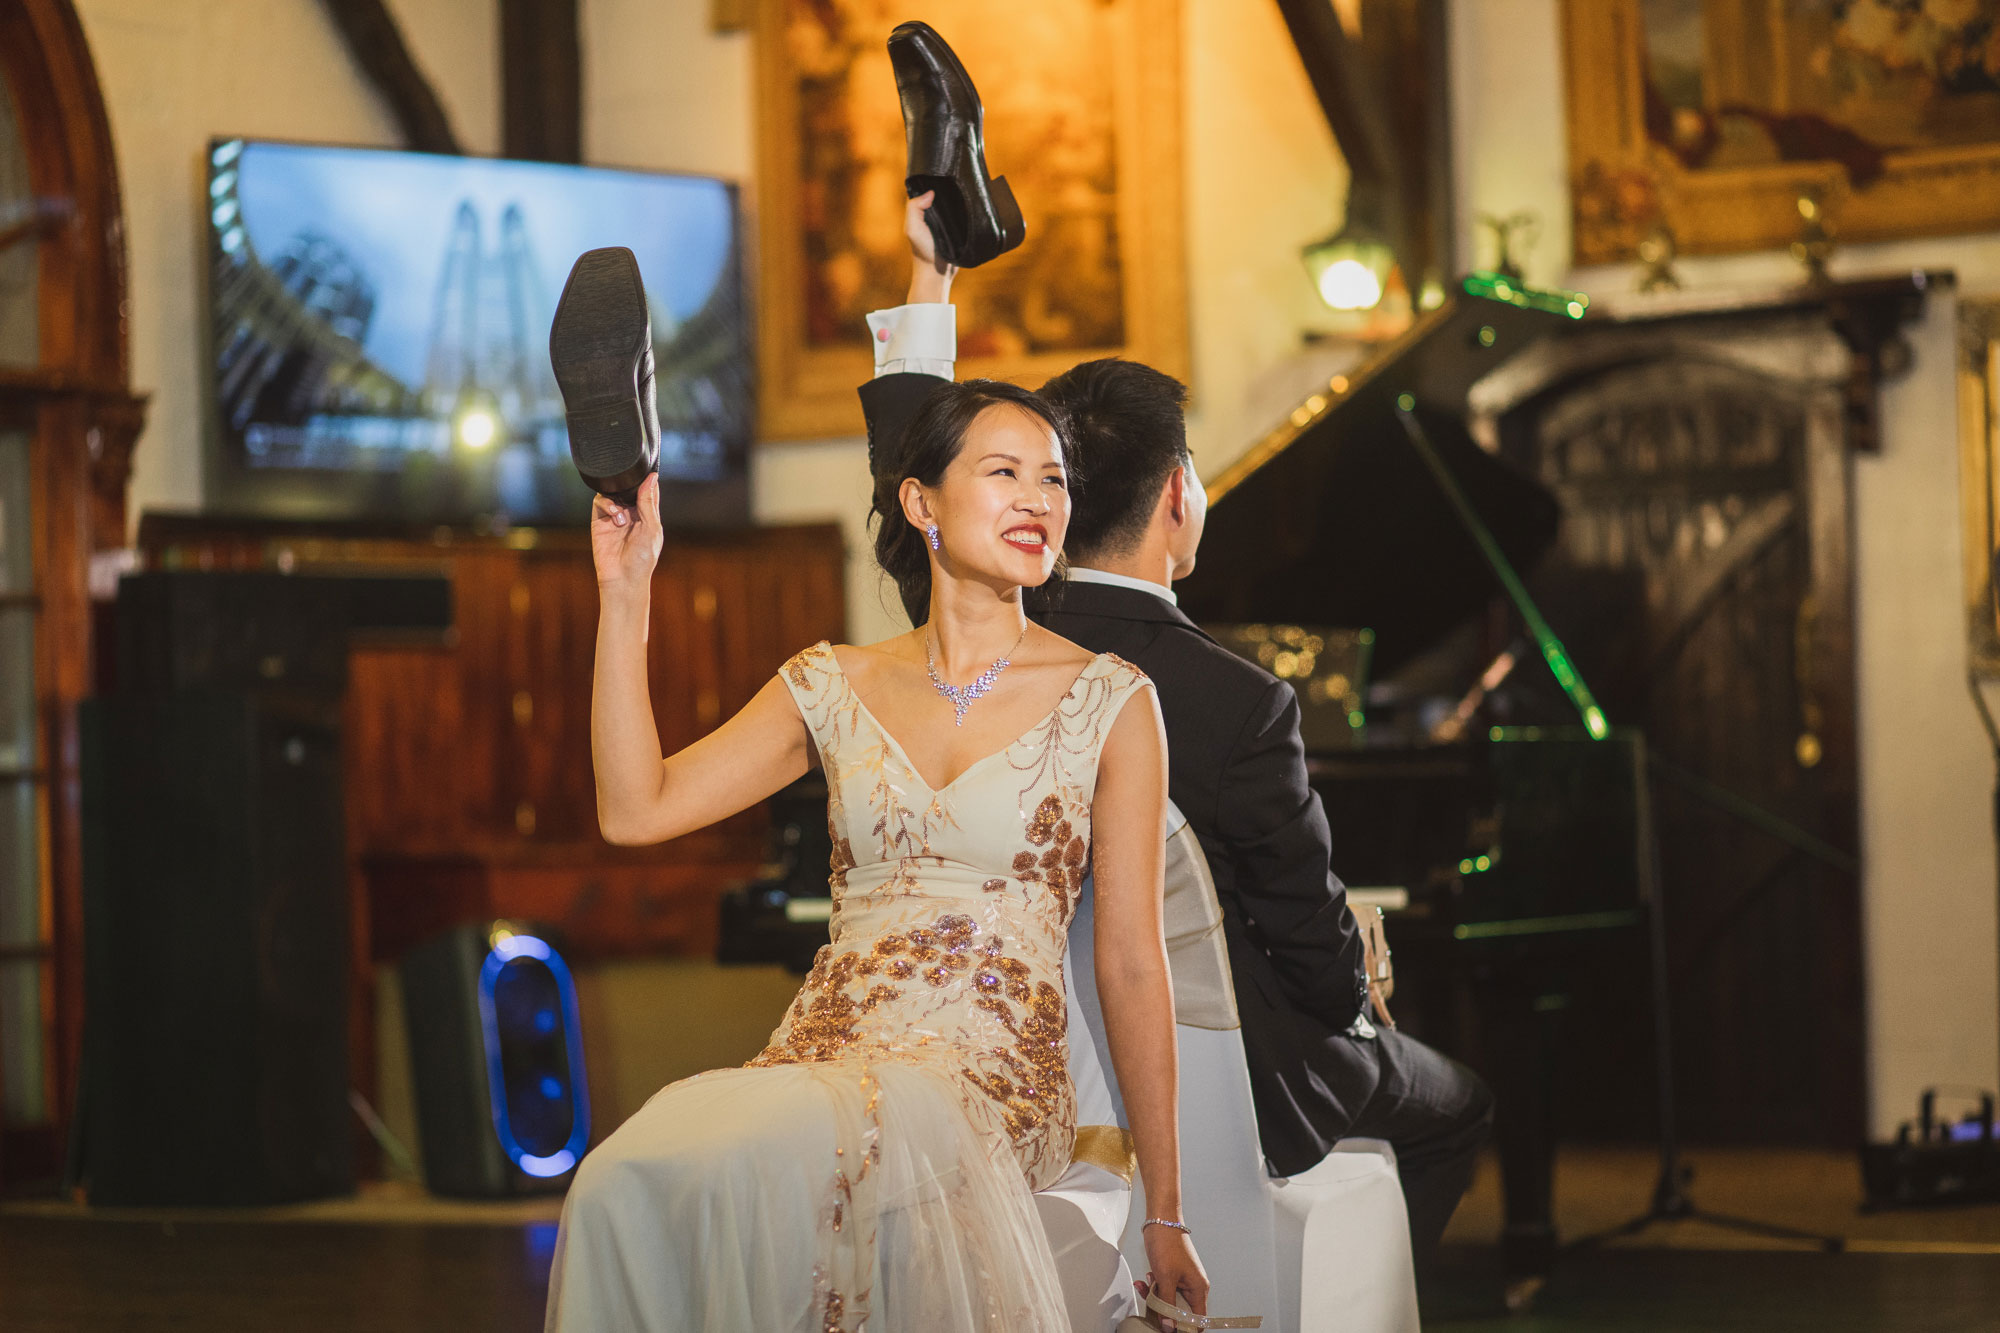 bride shoe game